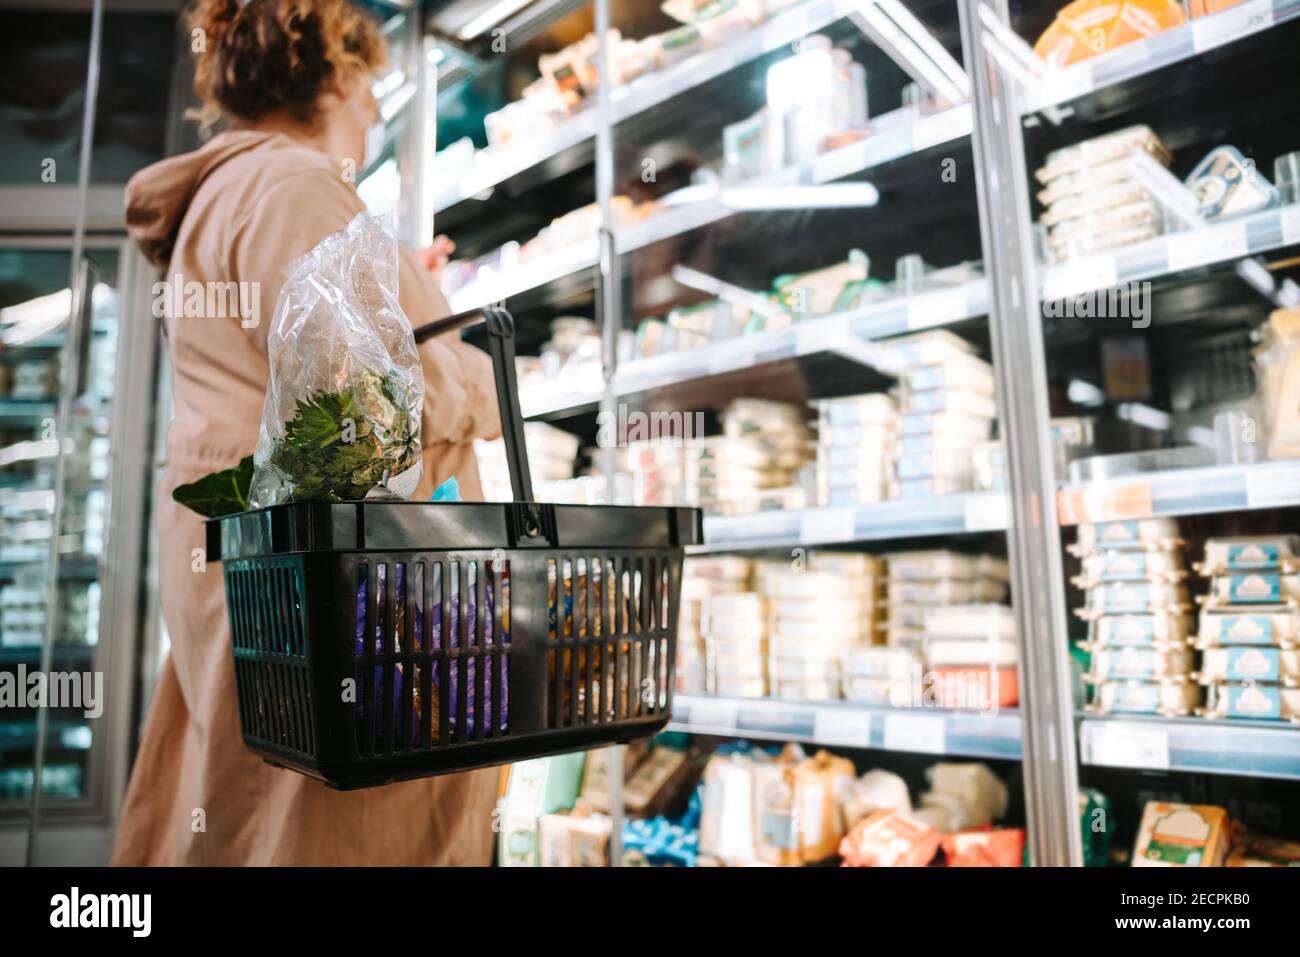 Frau, die einen Einkaufskorb hält und Lebensmittel im Regal betrachtet. Shopper einkaufen Lebensmittel im Supermarkt. Stockfoto